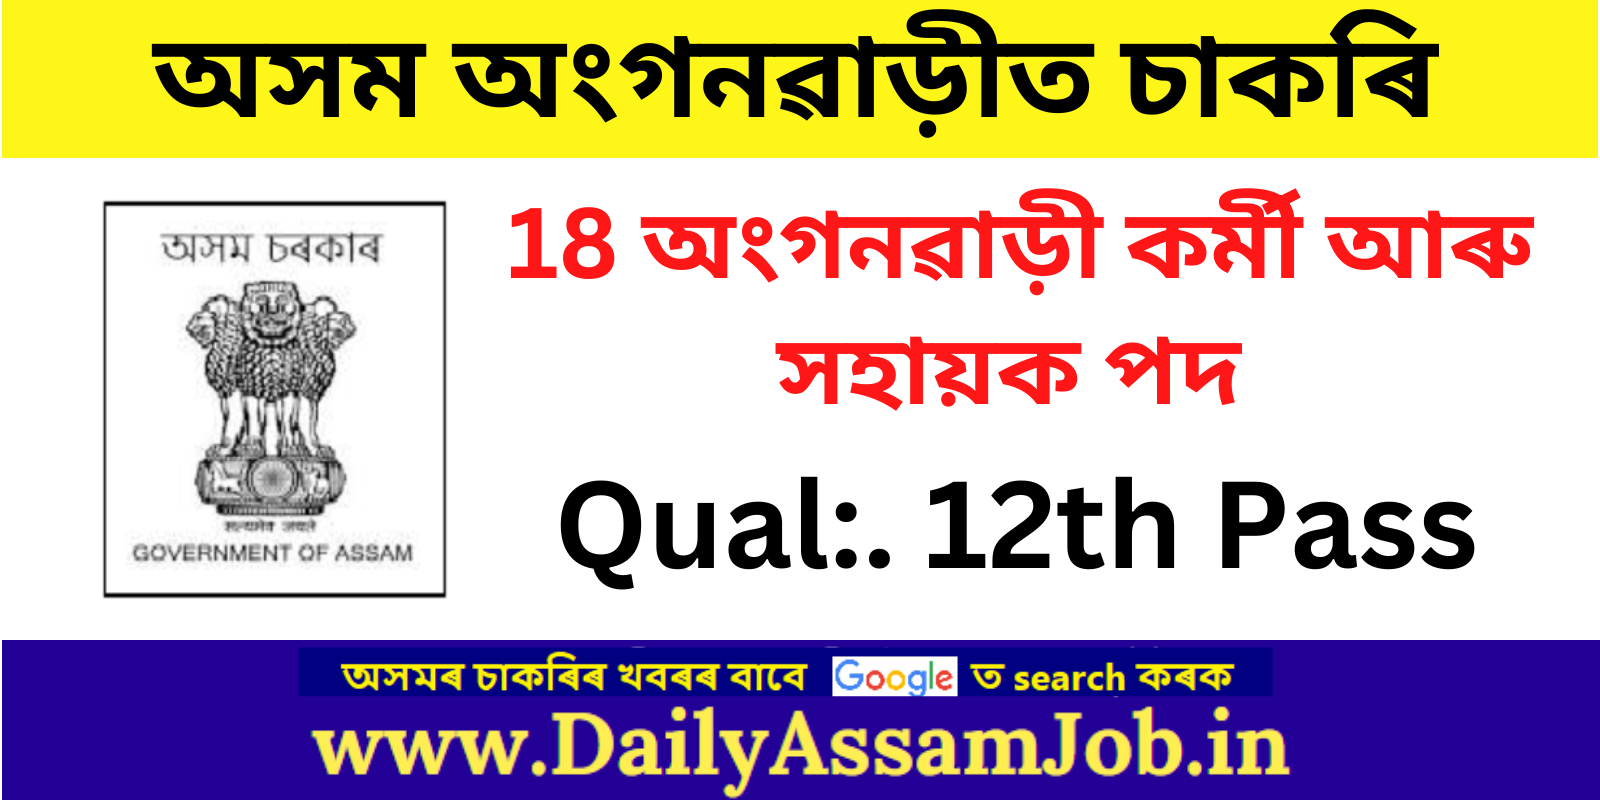 Assam Anganwadi Recruitment 2023